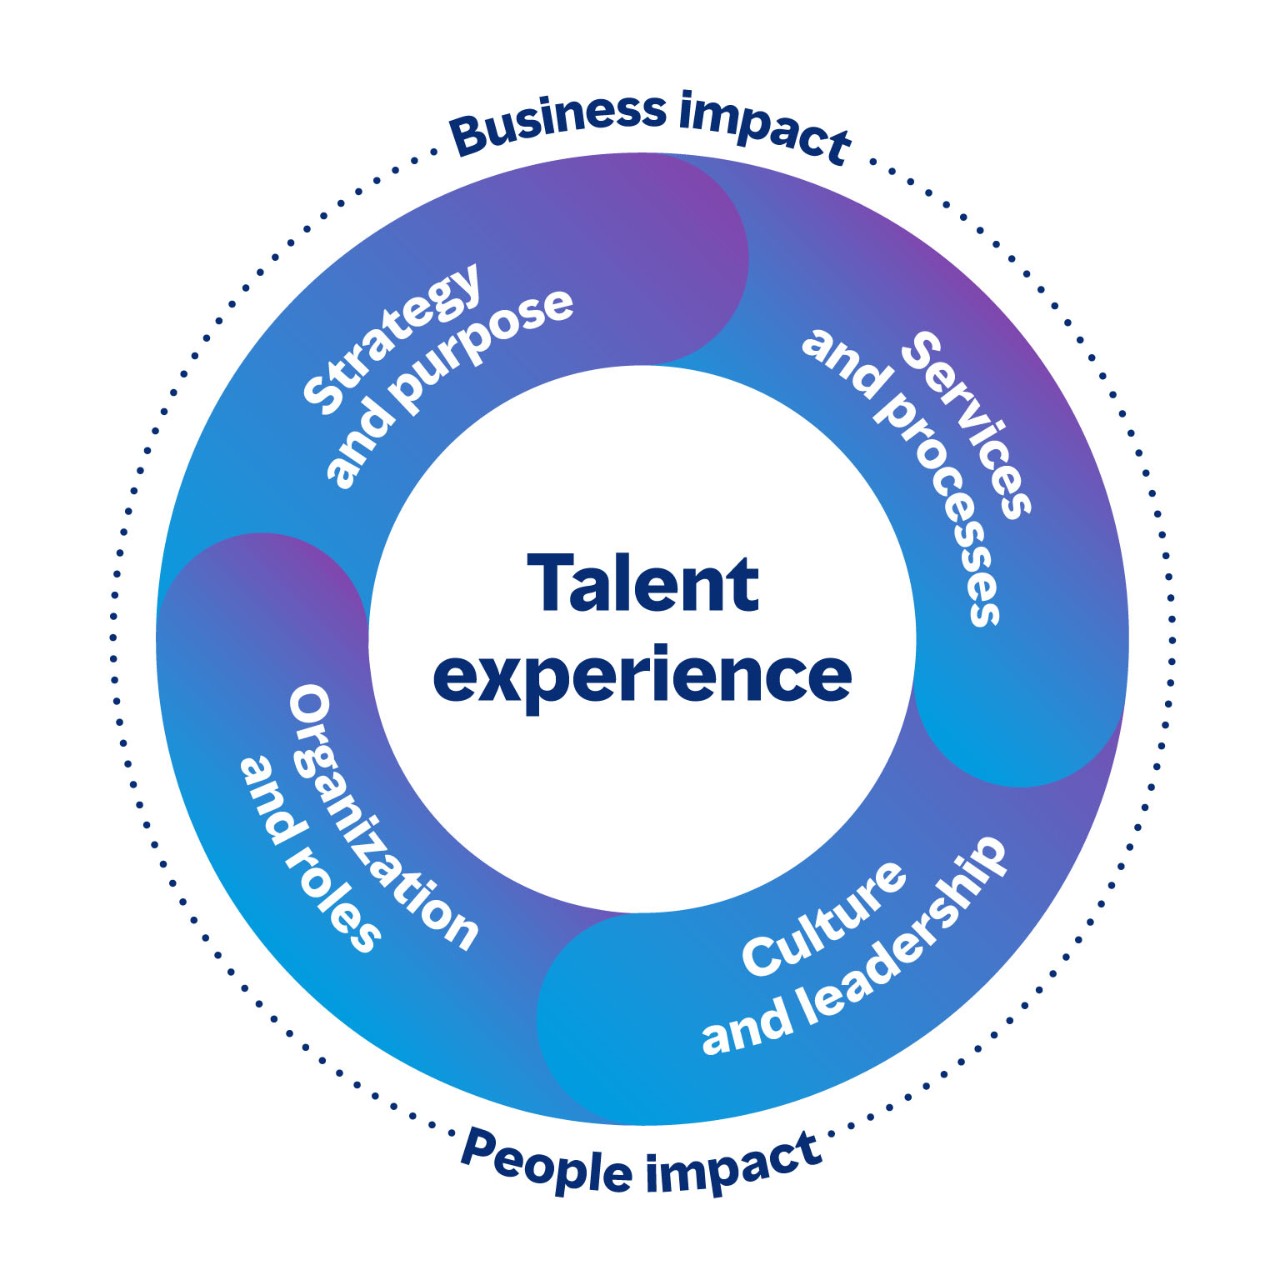 Image circulaire montrant les zones connectées de l’expérience des talents qui ont un impact sur l’entreprise et les gens. Les quatre domaines sont la stratégie et l’objectif, les services et les processus, la culture et la gestion, ainsi que l’organisation et les rôles.